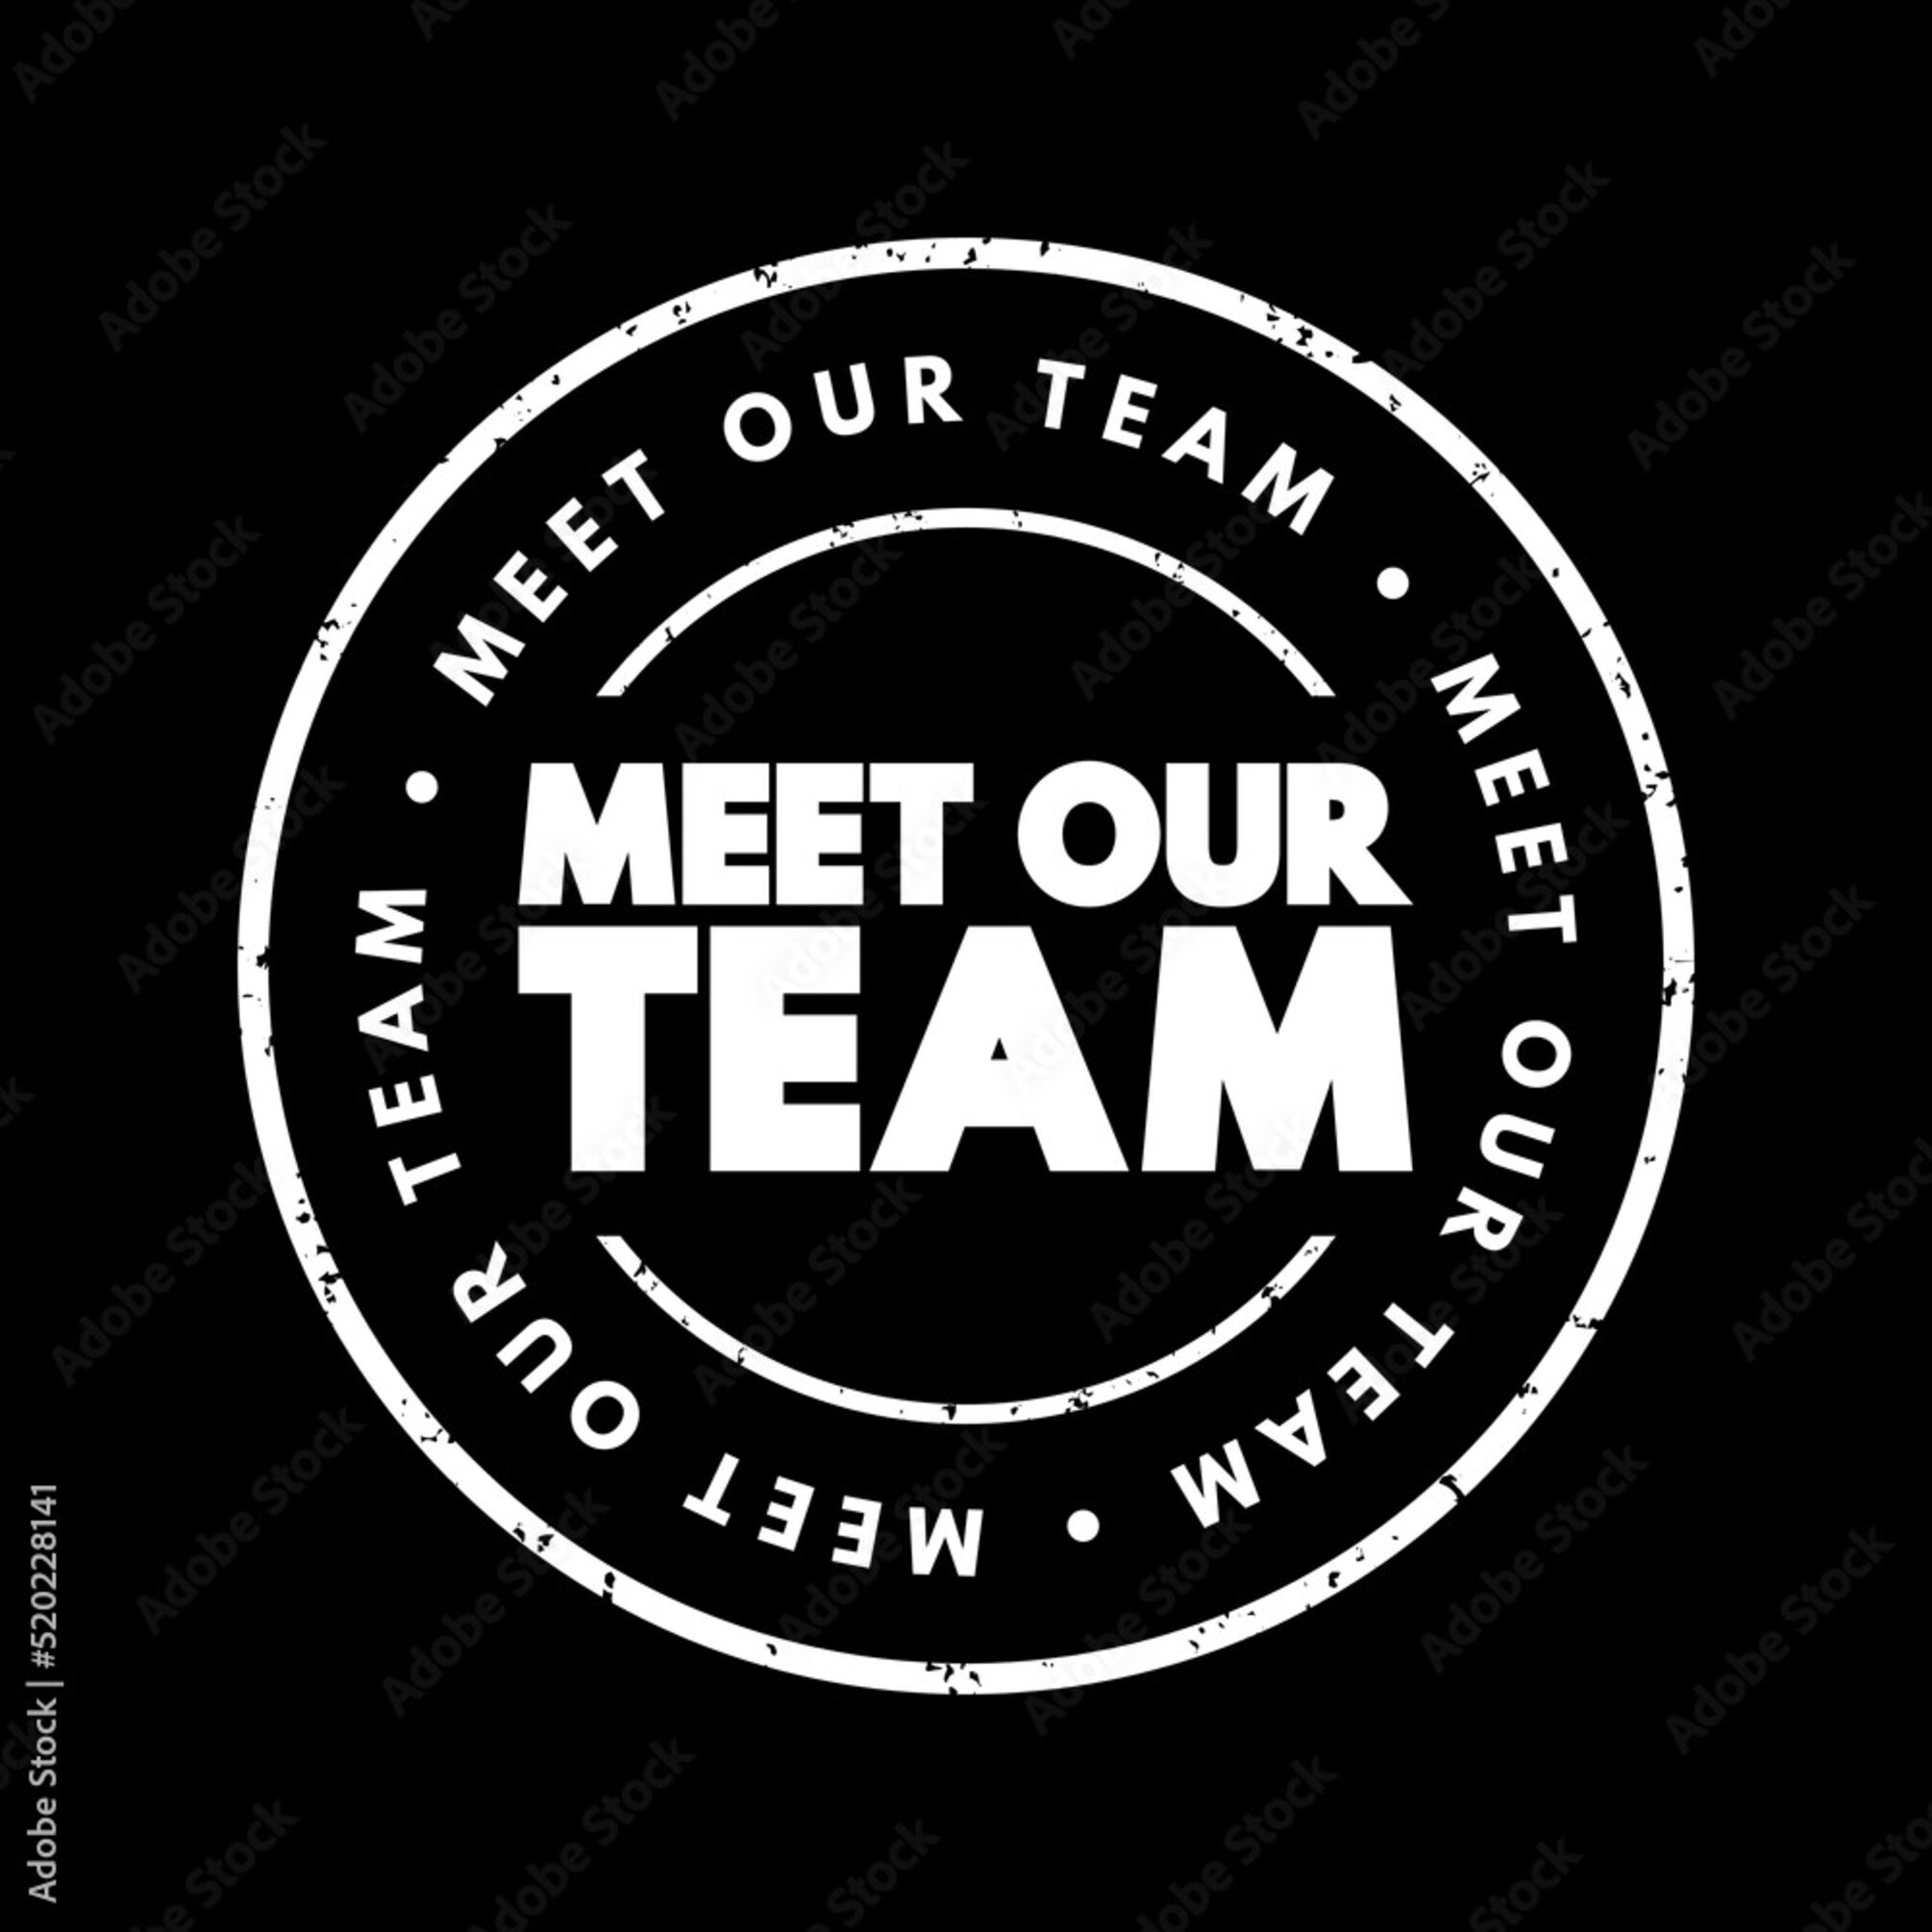 Meet our team badge